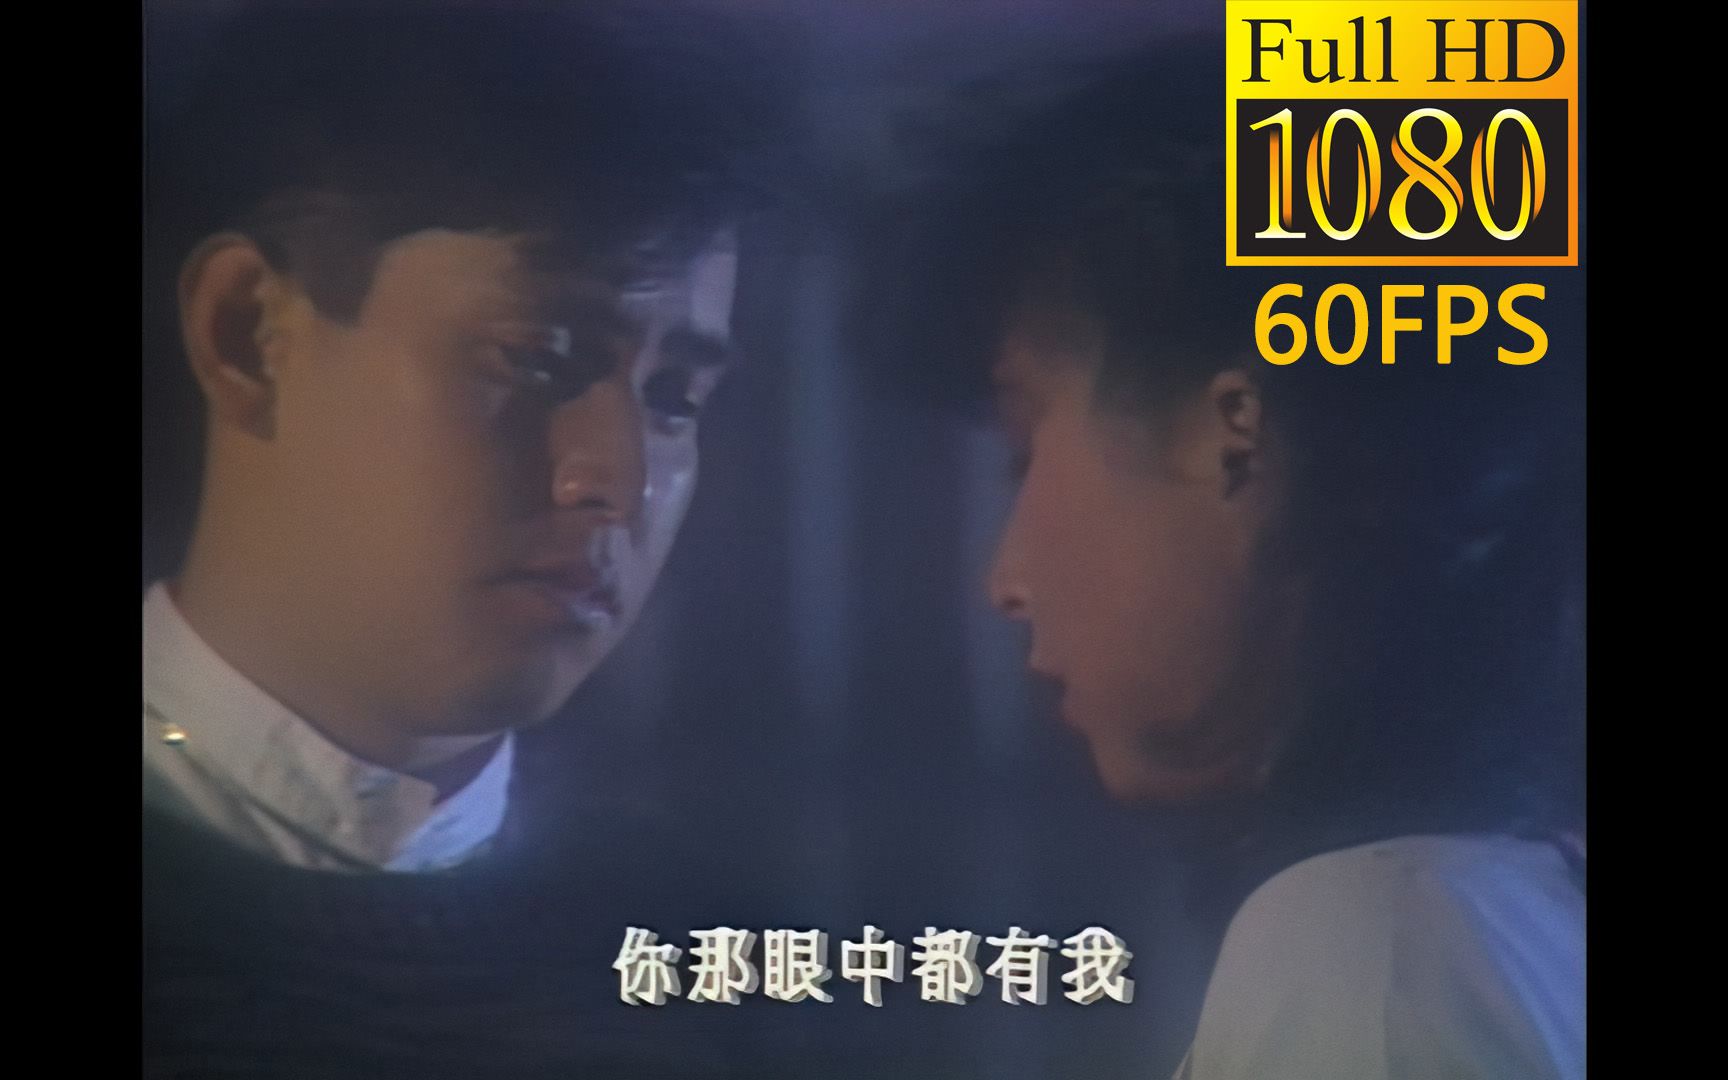 [图]谭咏麟《雾之恋》TVB版MV 1080P 60FPS高清修复版